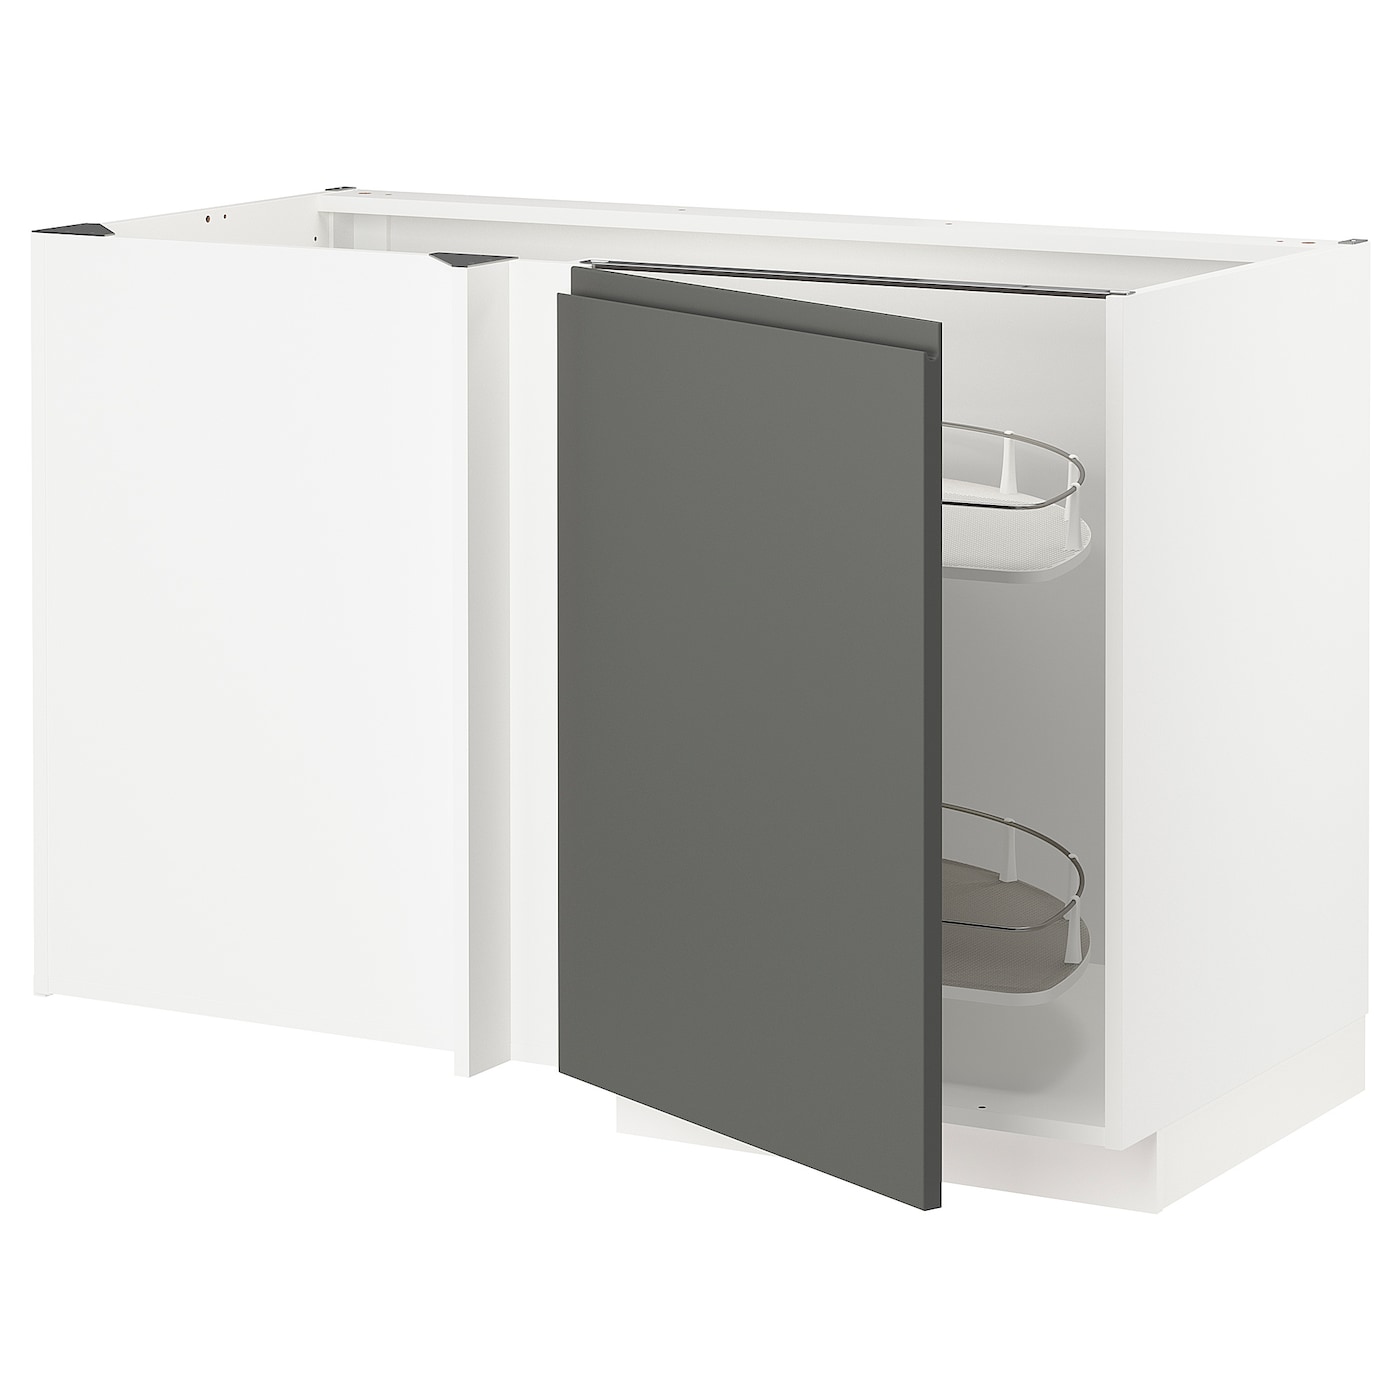 Напольный кухонный шкаф  - IKEA METOD, 88x67,5x127,5см, белый/темно-серый, МЕТОД ИКЕА